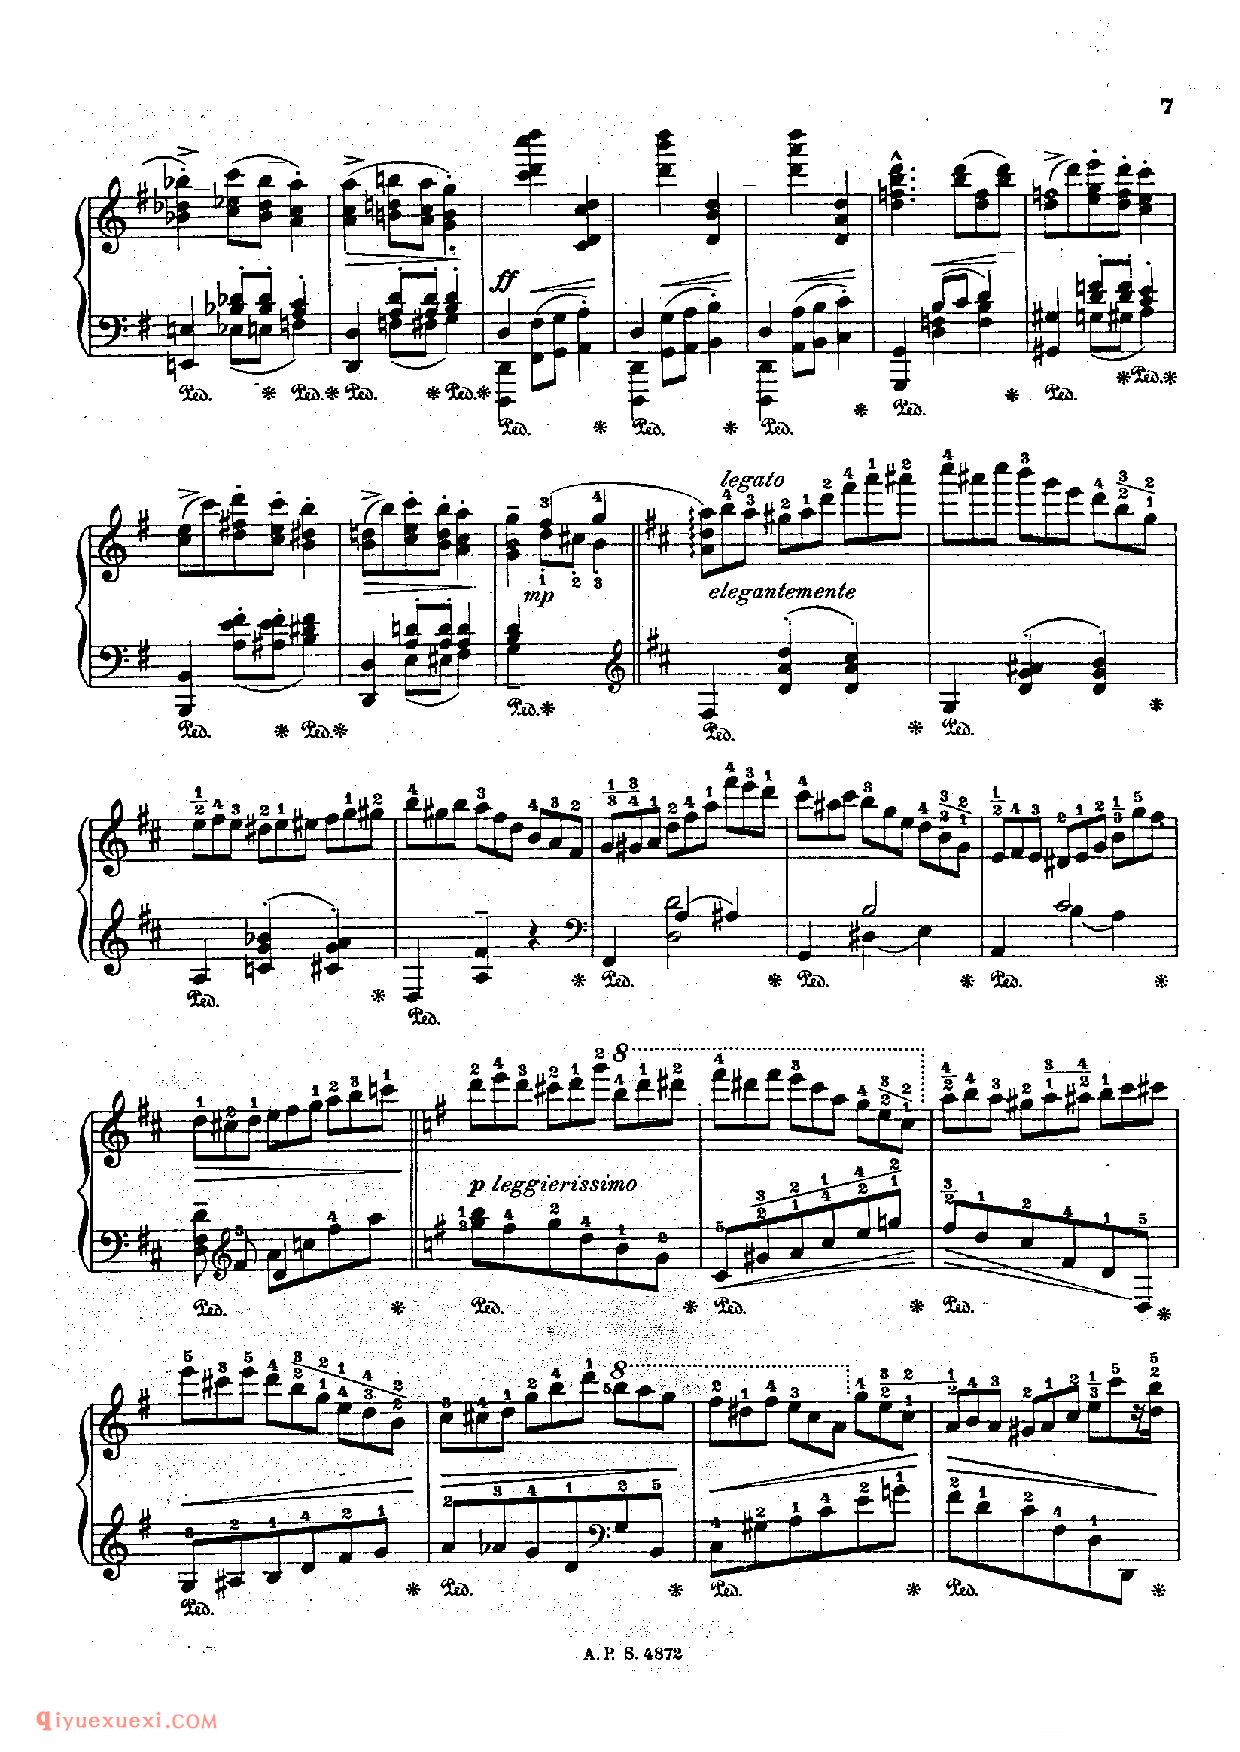 戈多夫斯基-肖邦圆舞曲 Op18_Godowsky-Chopin Waltz Op18_超高难度钢琴谱